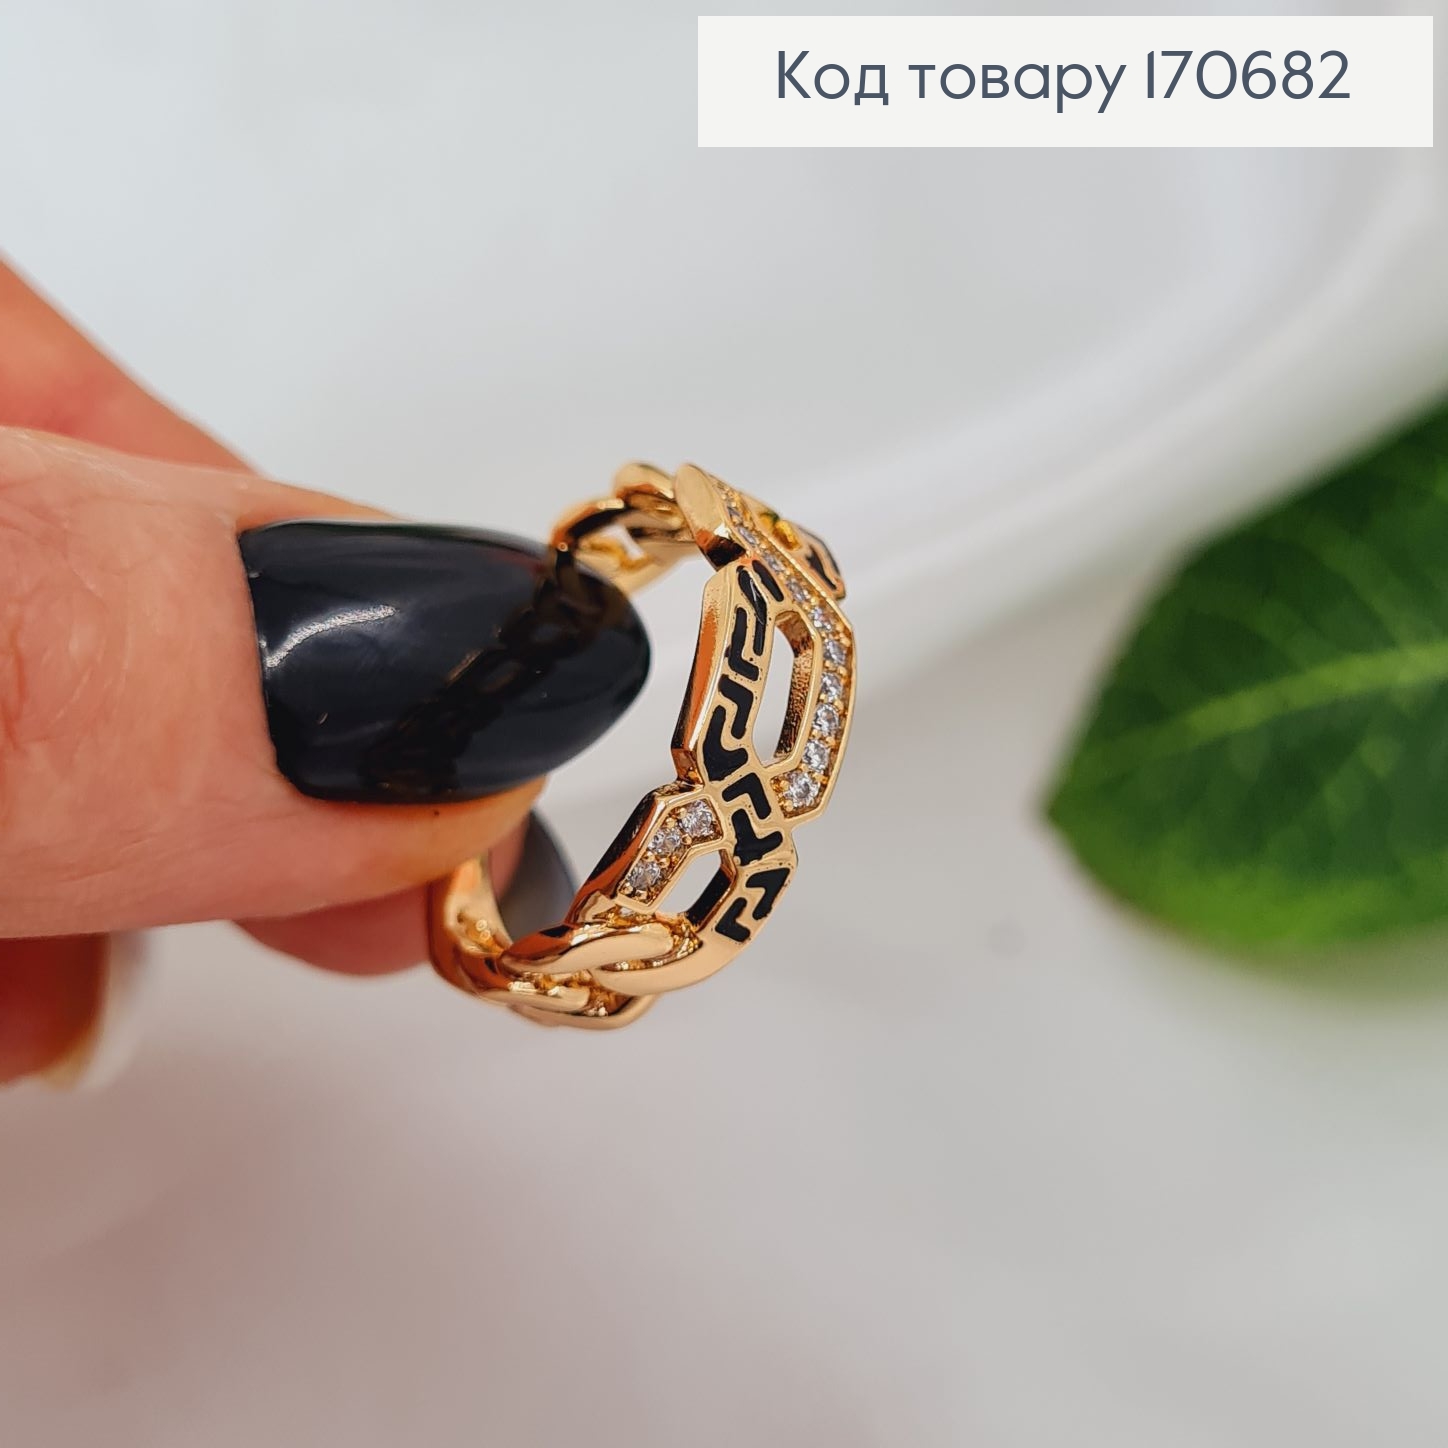 Кольцо "Стильное" с камнями, Xuping 18K 170682 фото 2